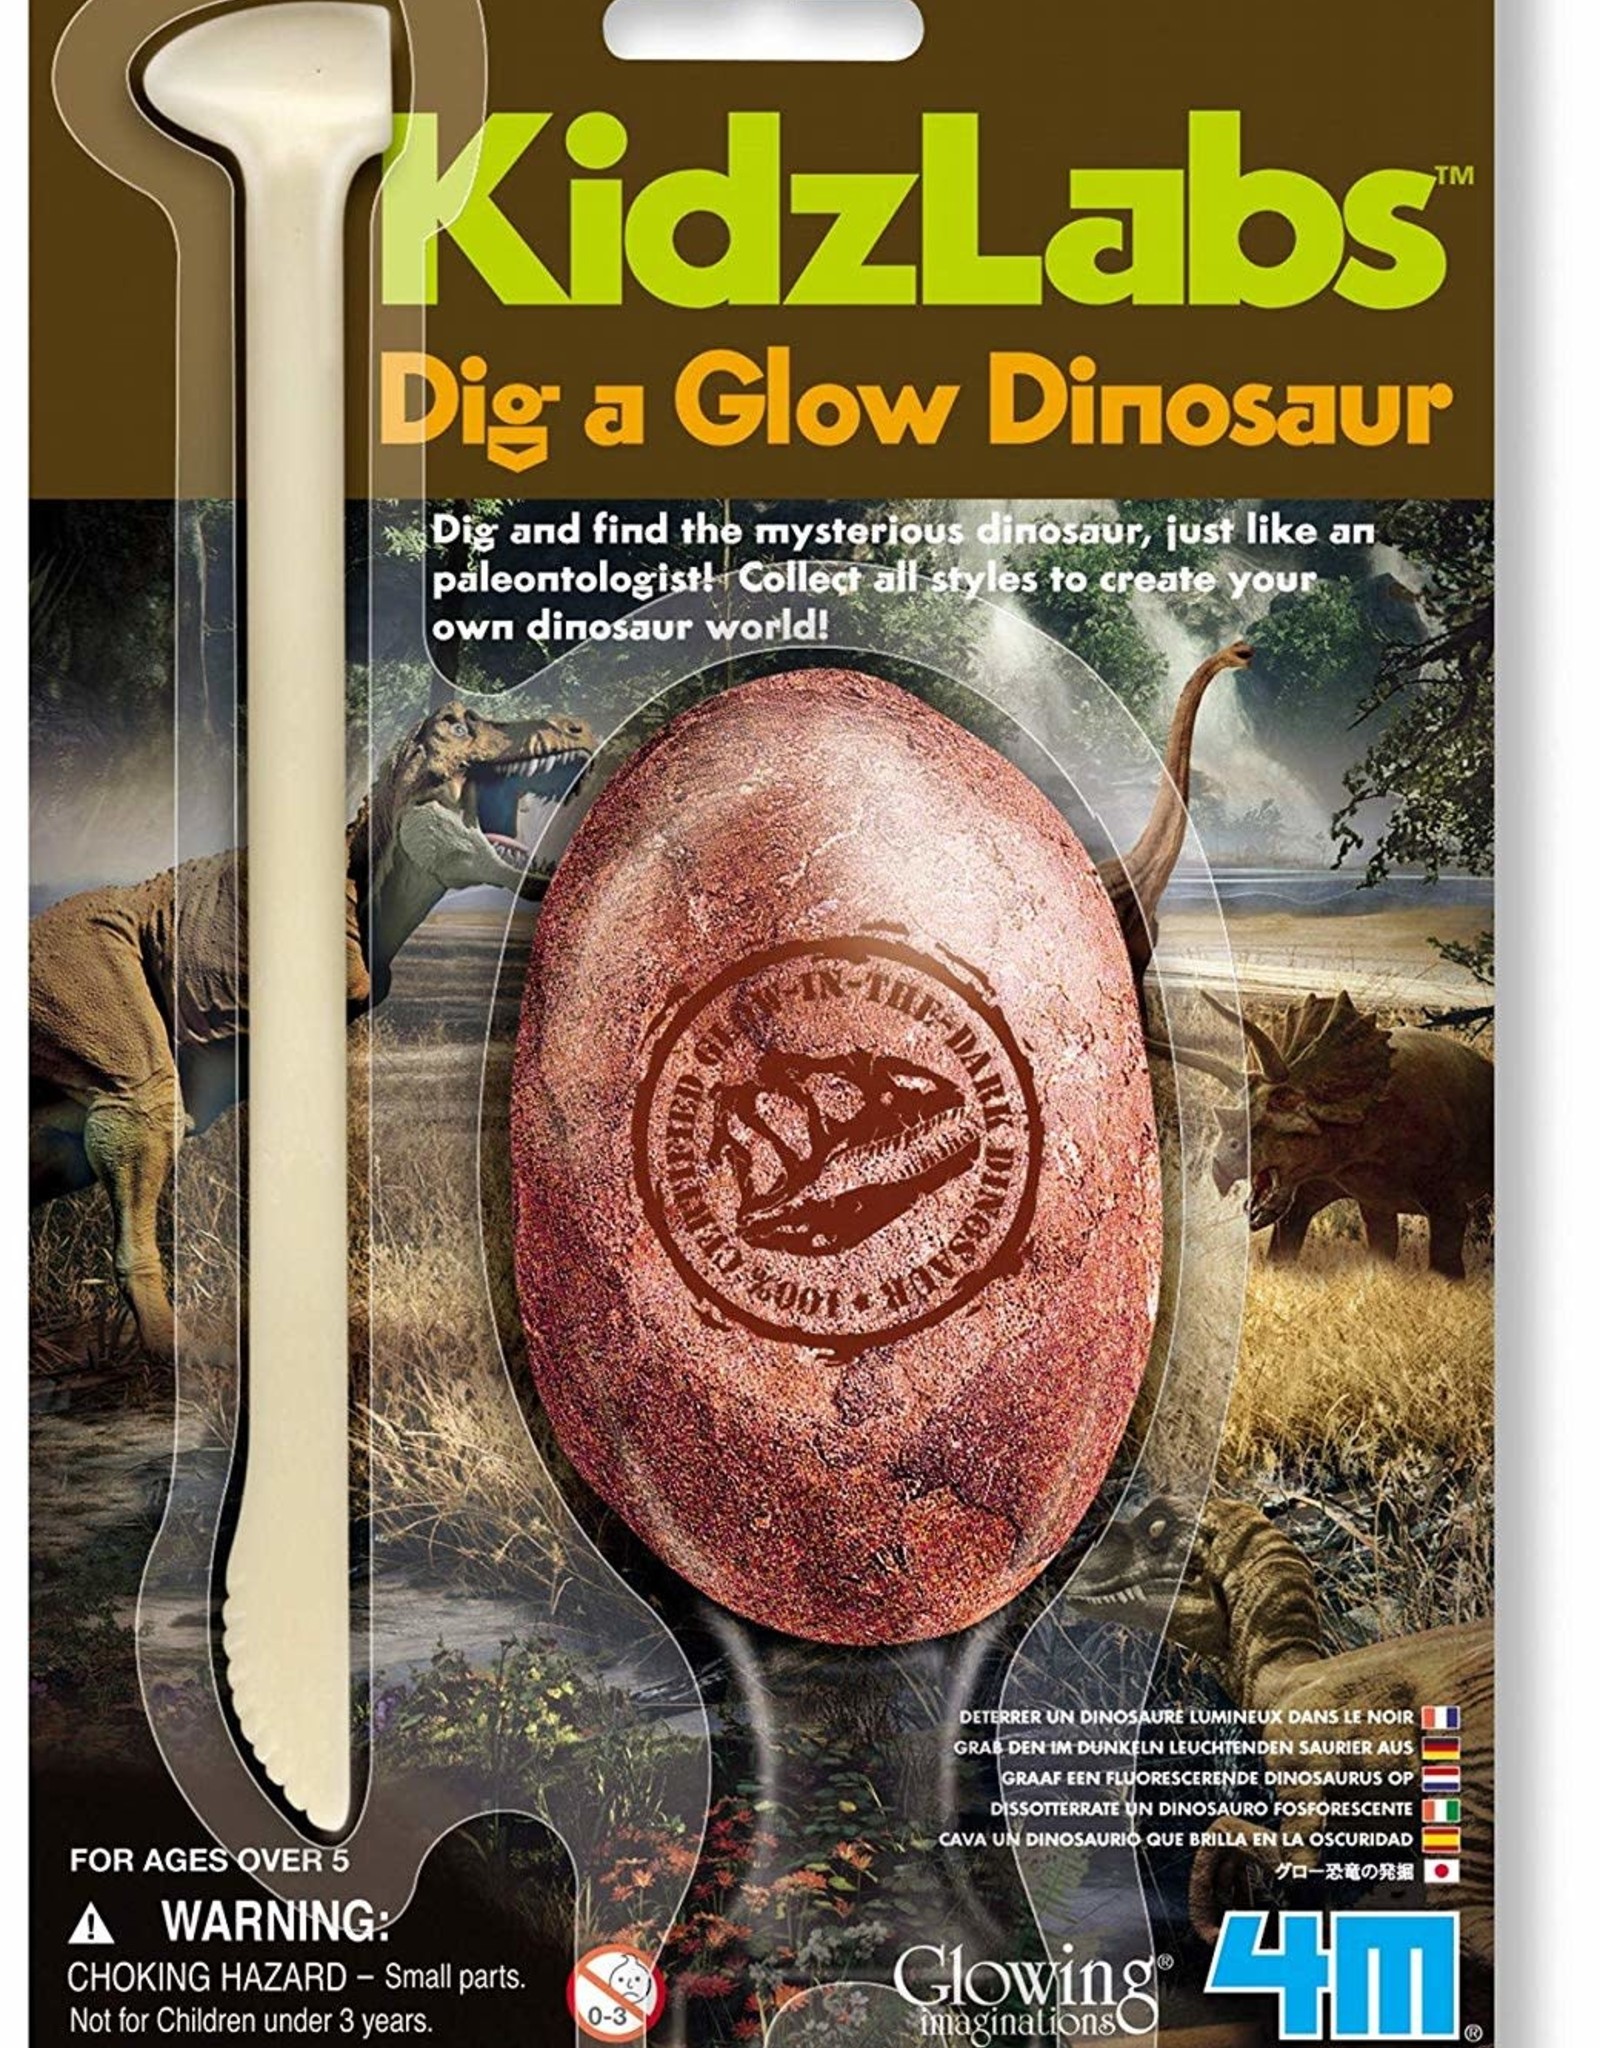 Dig a Glow Dinosaur